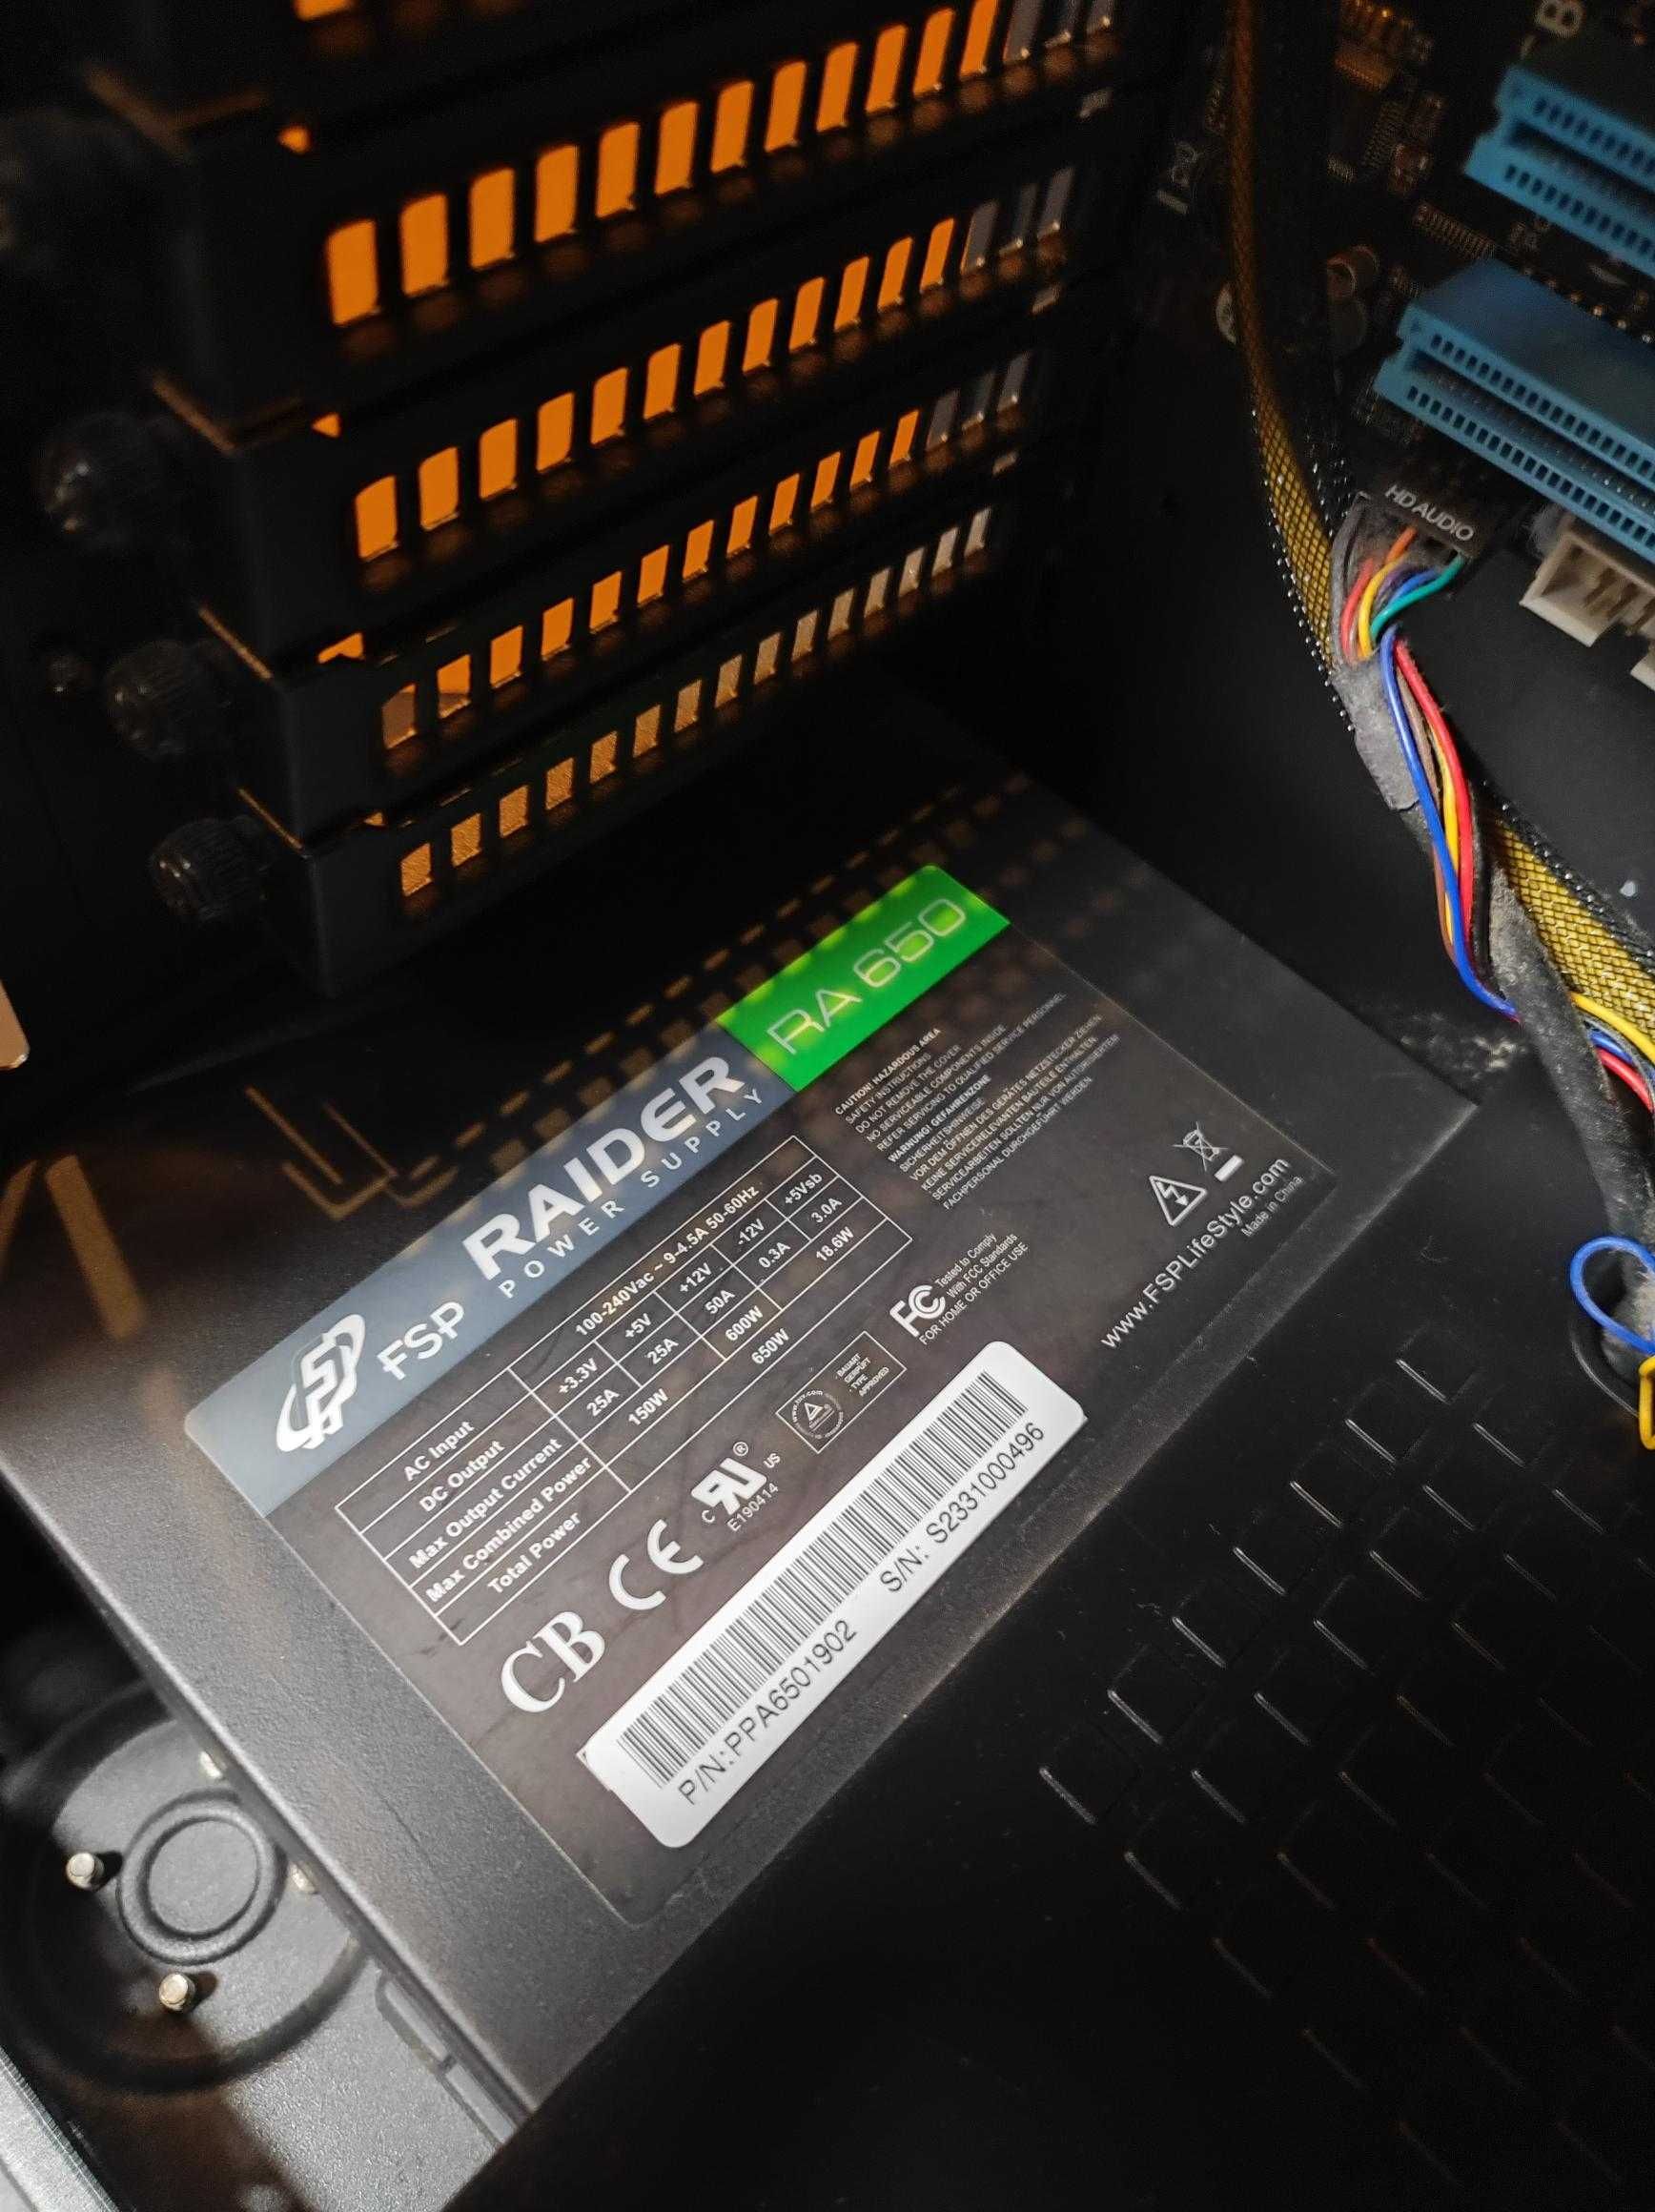 PC i7 2600k | 8GB RAM | RADEON 7770HD 2GB | SSD 120GB | HDD 500GB